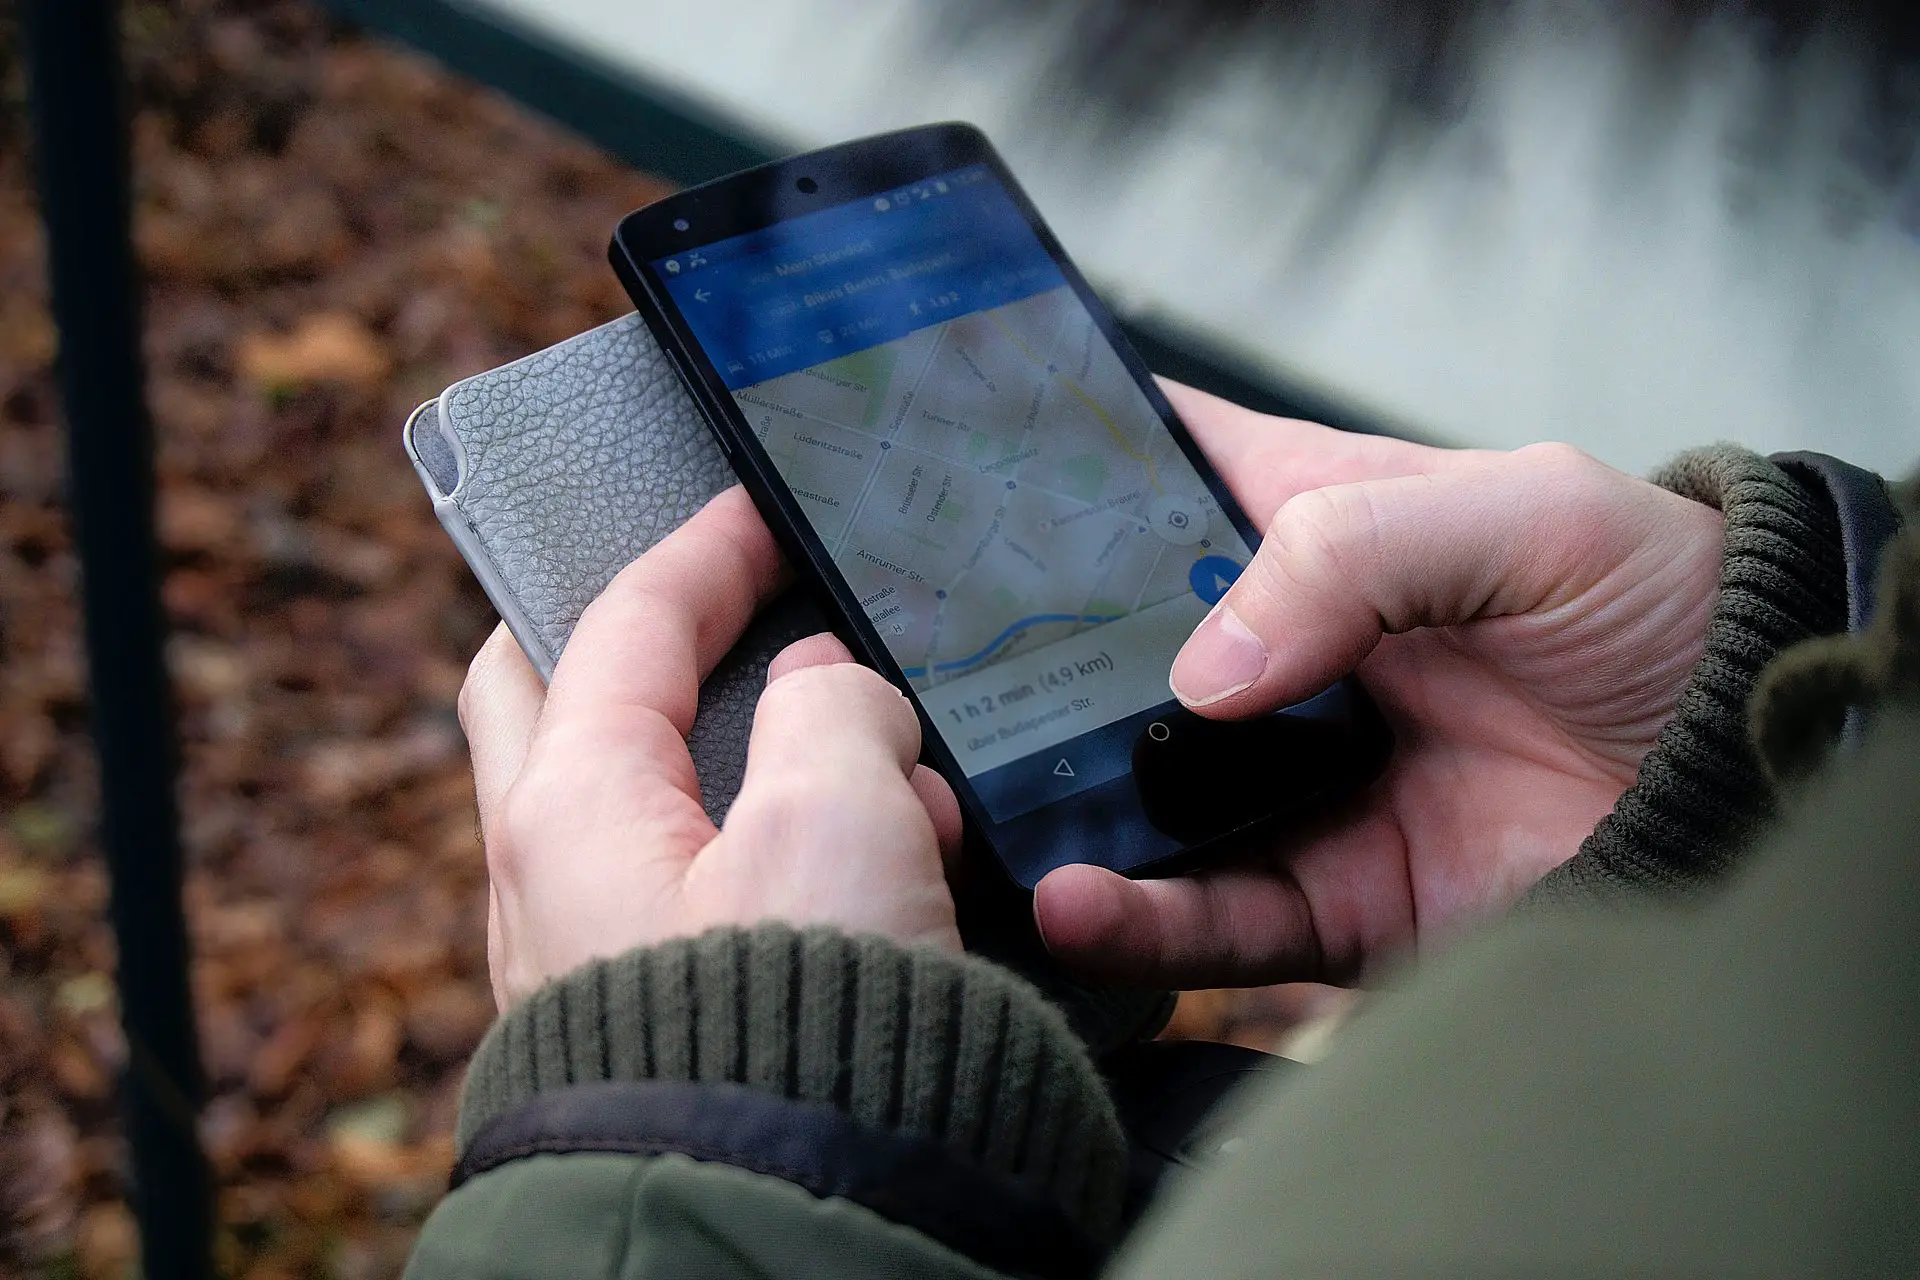 Google Haritalar'a dava açıldı: Navigasyon kullanımı trajedi ile sonlandı